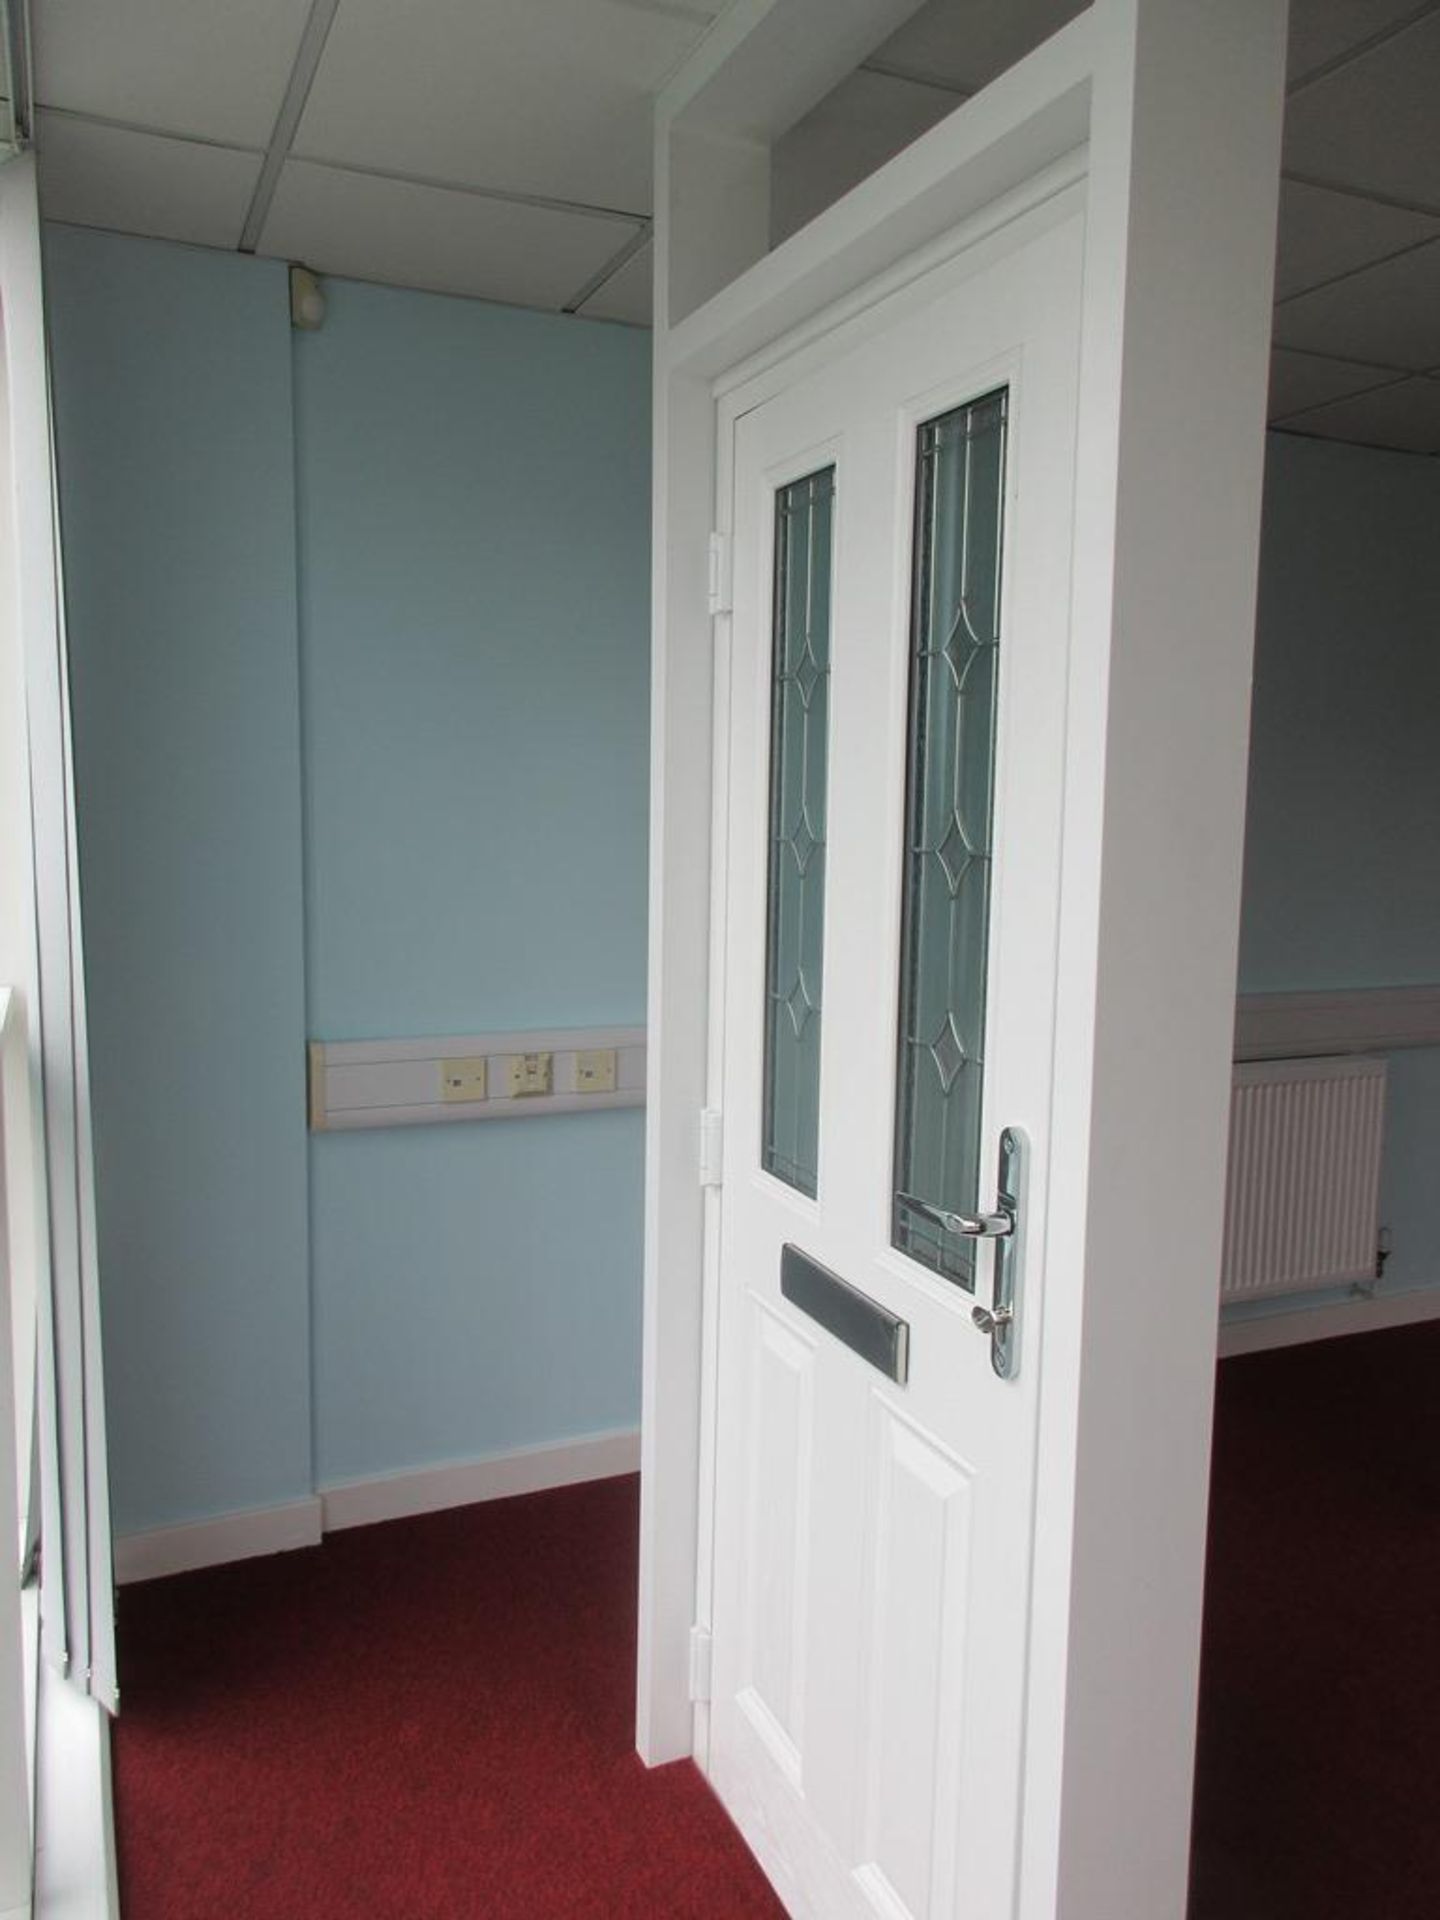 Composite showroom door - Image 2 of 3